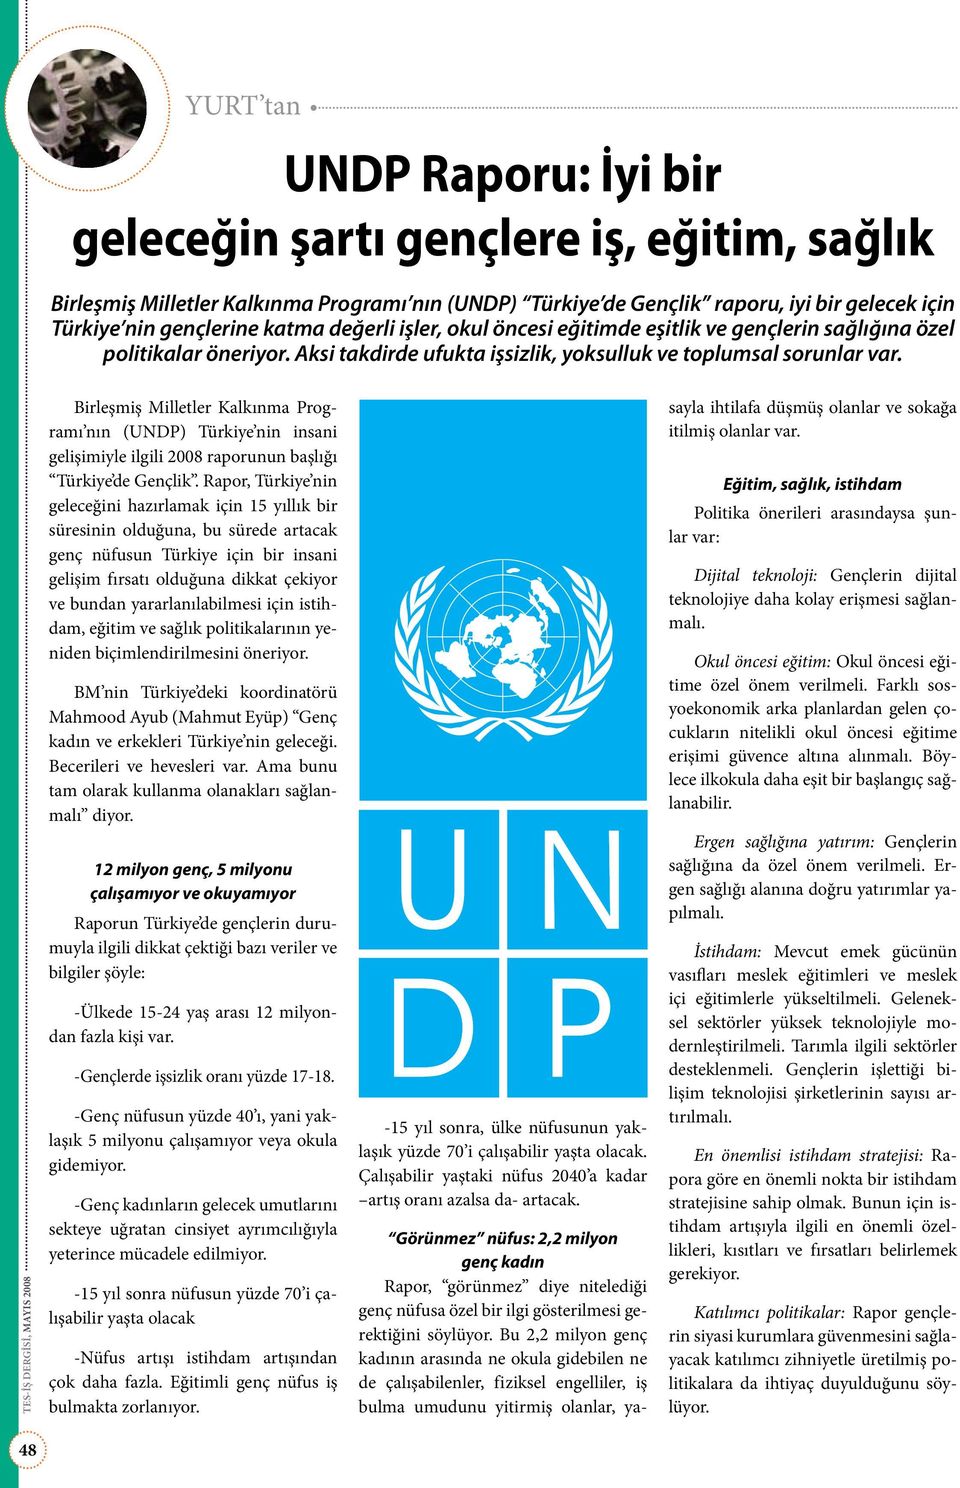 Birleşmiş Milletler Kalkınma Programı nın (UNDP) Türkiye nin insani gelişimiyle ilgili 2008 raporunun başlığı Türkiye de Gençlik.